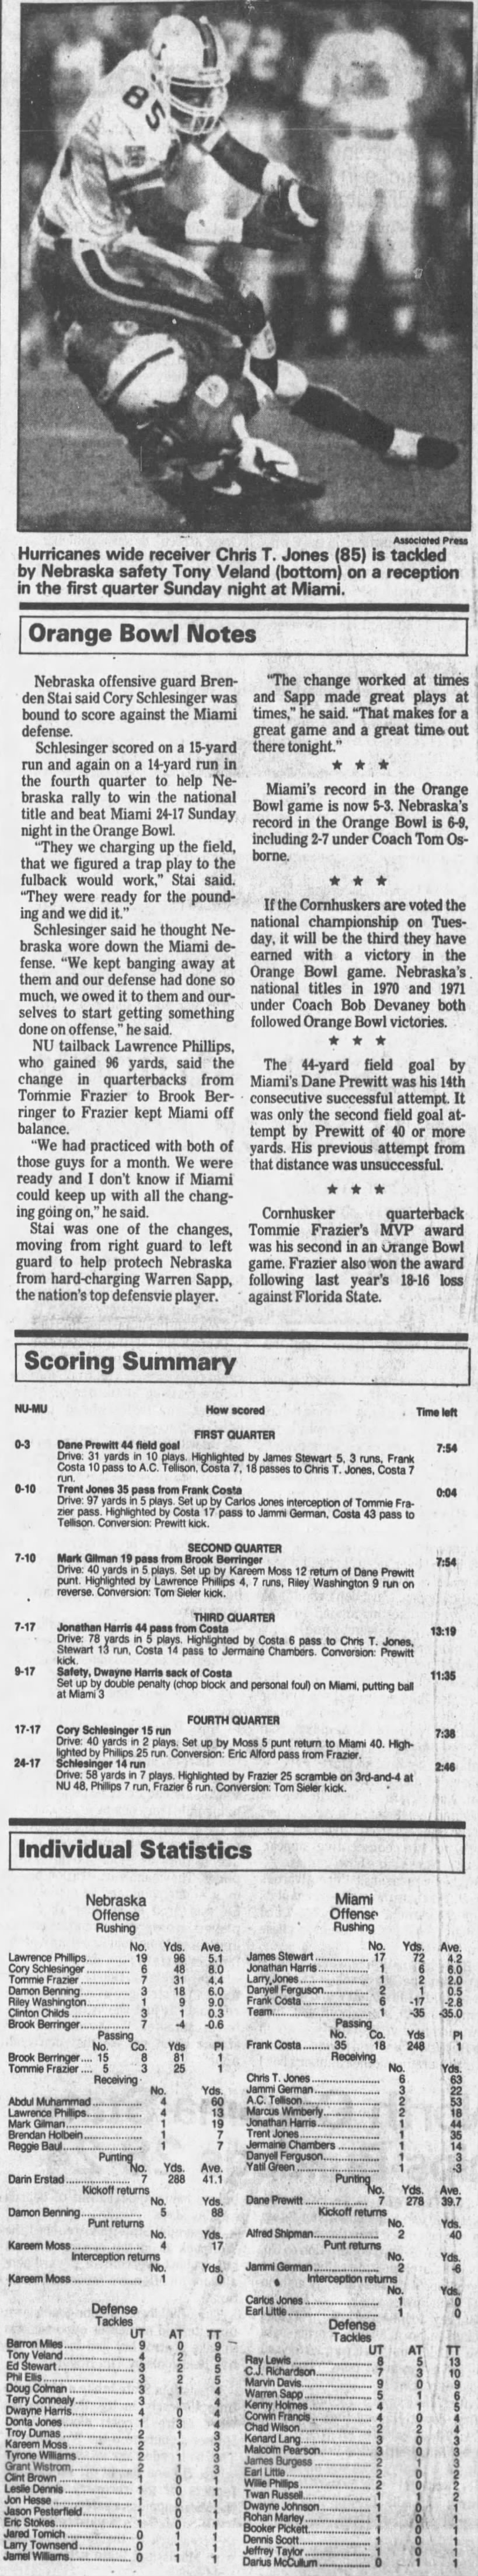 1995 Orange Bowl notes & scoring summary